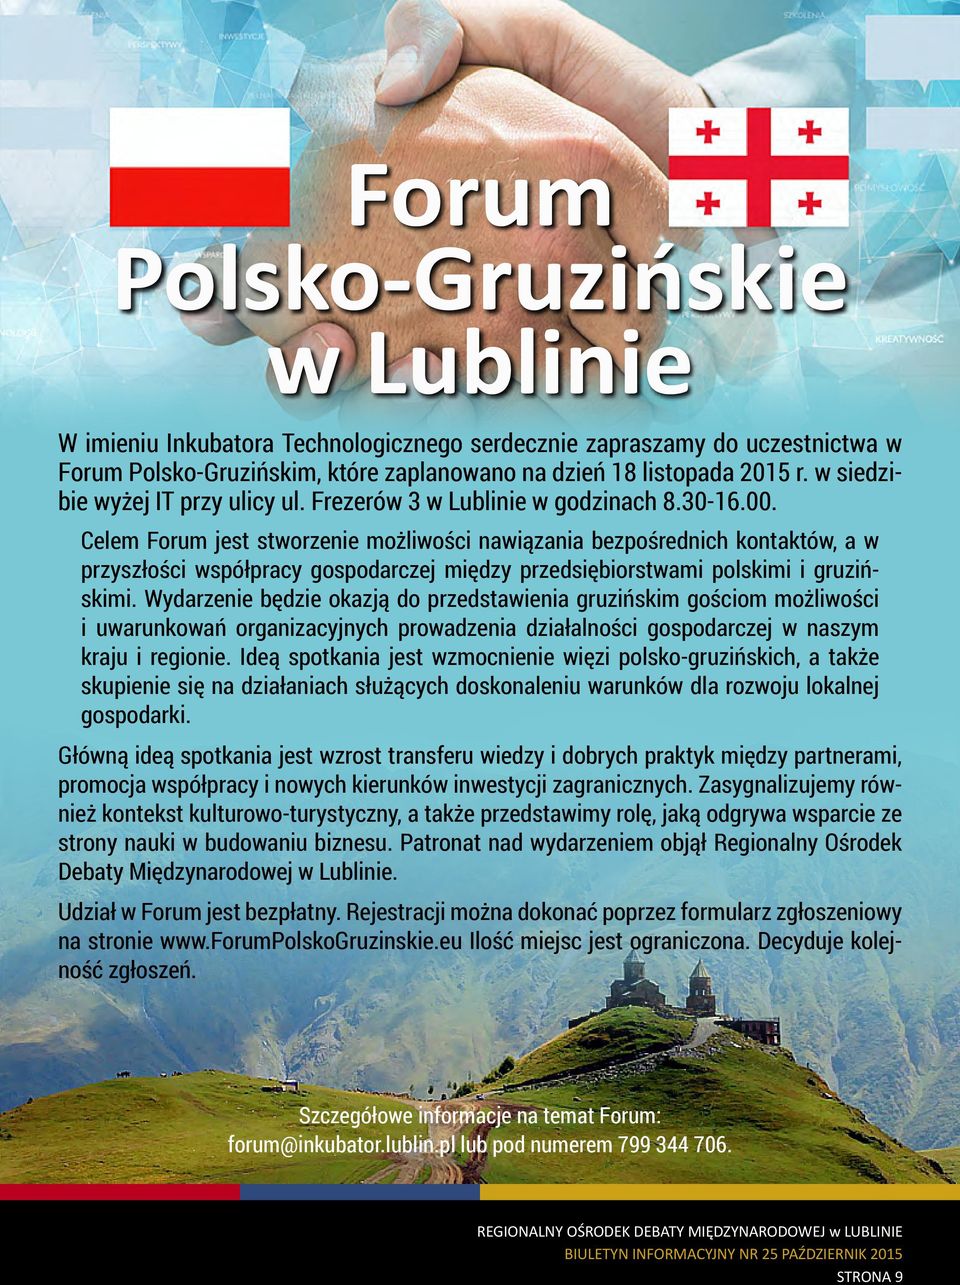 Celem Forum jest stworzenie możliwości nawiązania bezpośrednich kontaktów, a w przyszłości współpracy gospodarczej między przedsiębiorstwami polskimi i gruzińskimi.